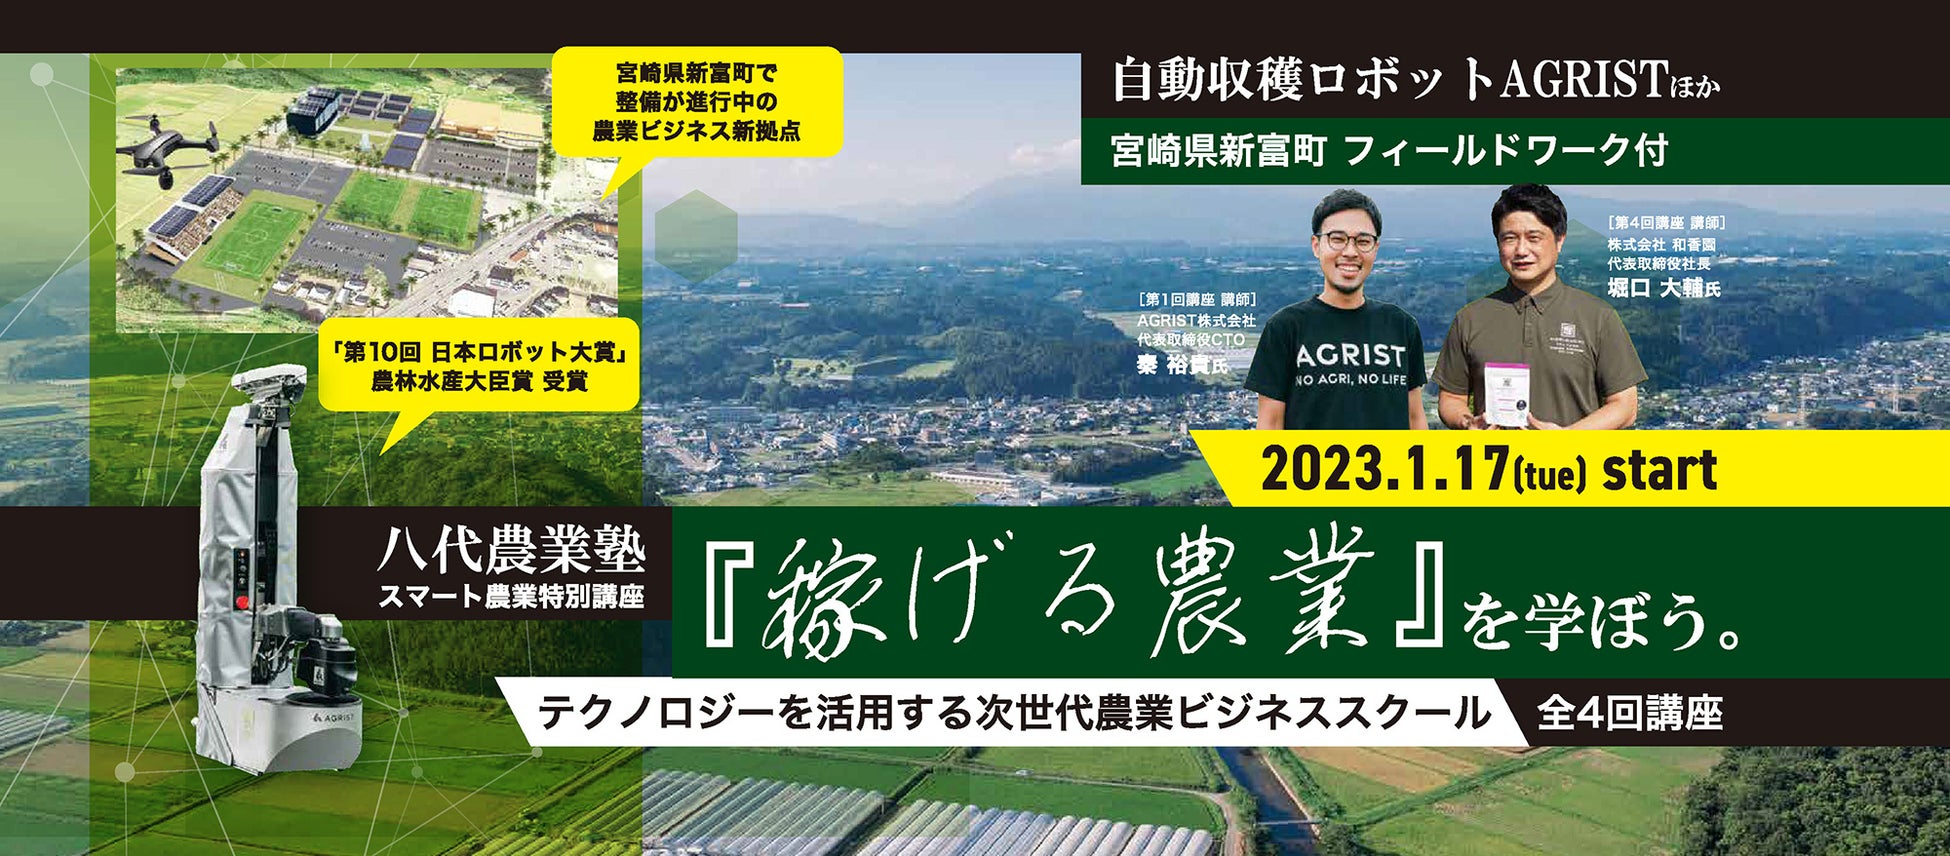 IoT、AIなどを活用するスマート農業が学べる人材育成講座が熊本県八代市で2023年1月開講。農業ロボットベンチャーらが講師に登壇、アグリテック先進地・宮崎県新富町でのフィールドワークも実施のサブ画像1